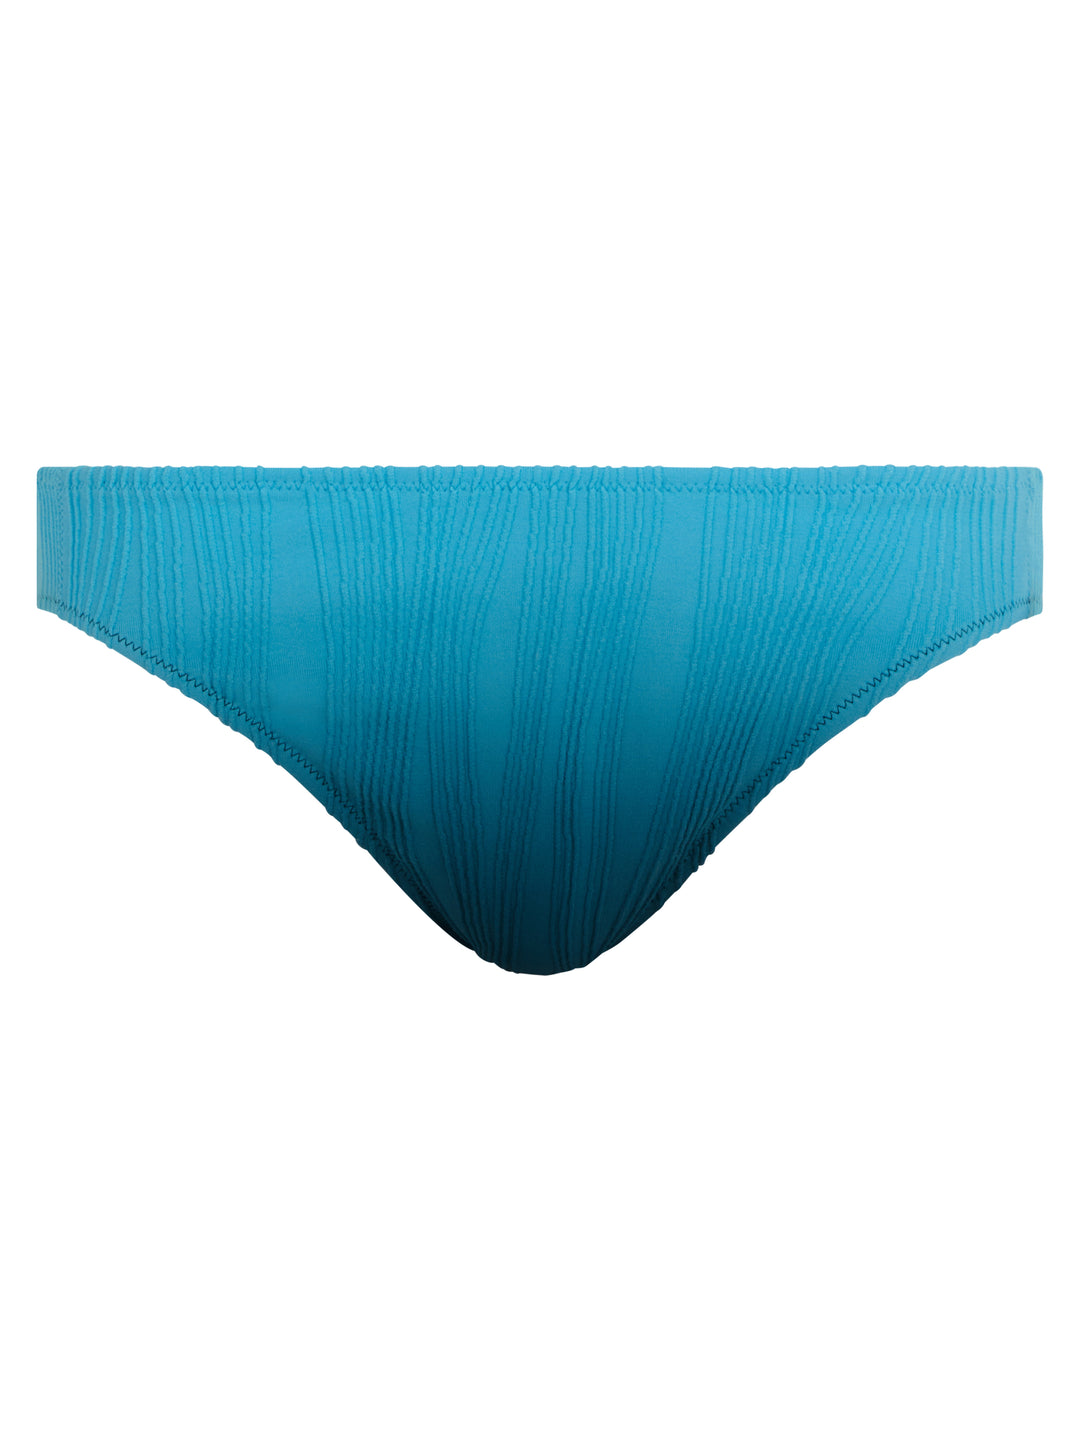 Chantelle Swimwear - Трусики для плавания одного размера, синий галстук и краска